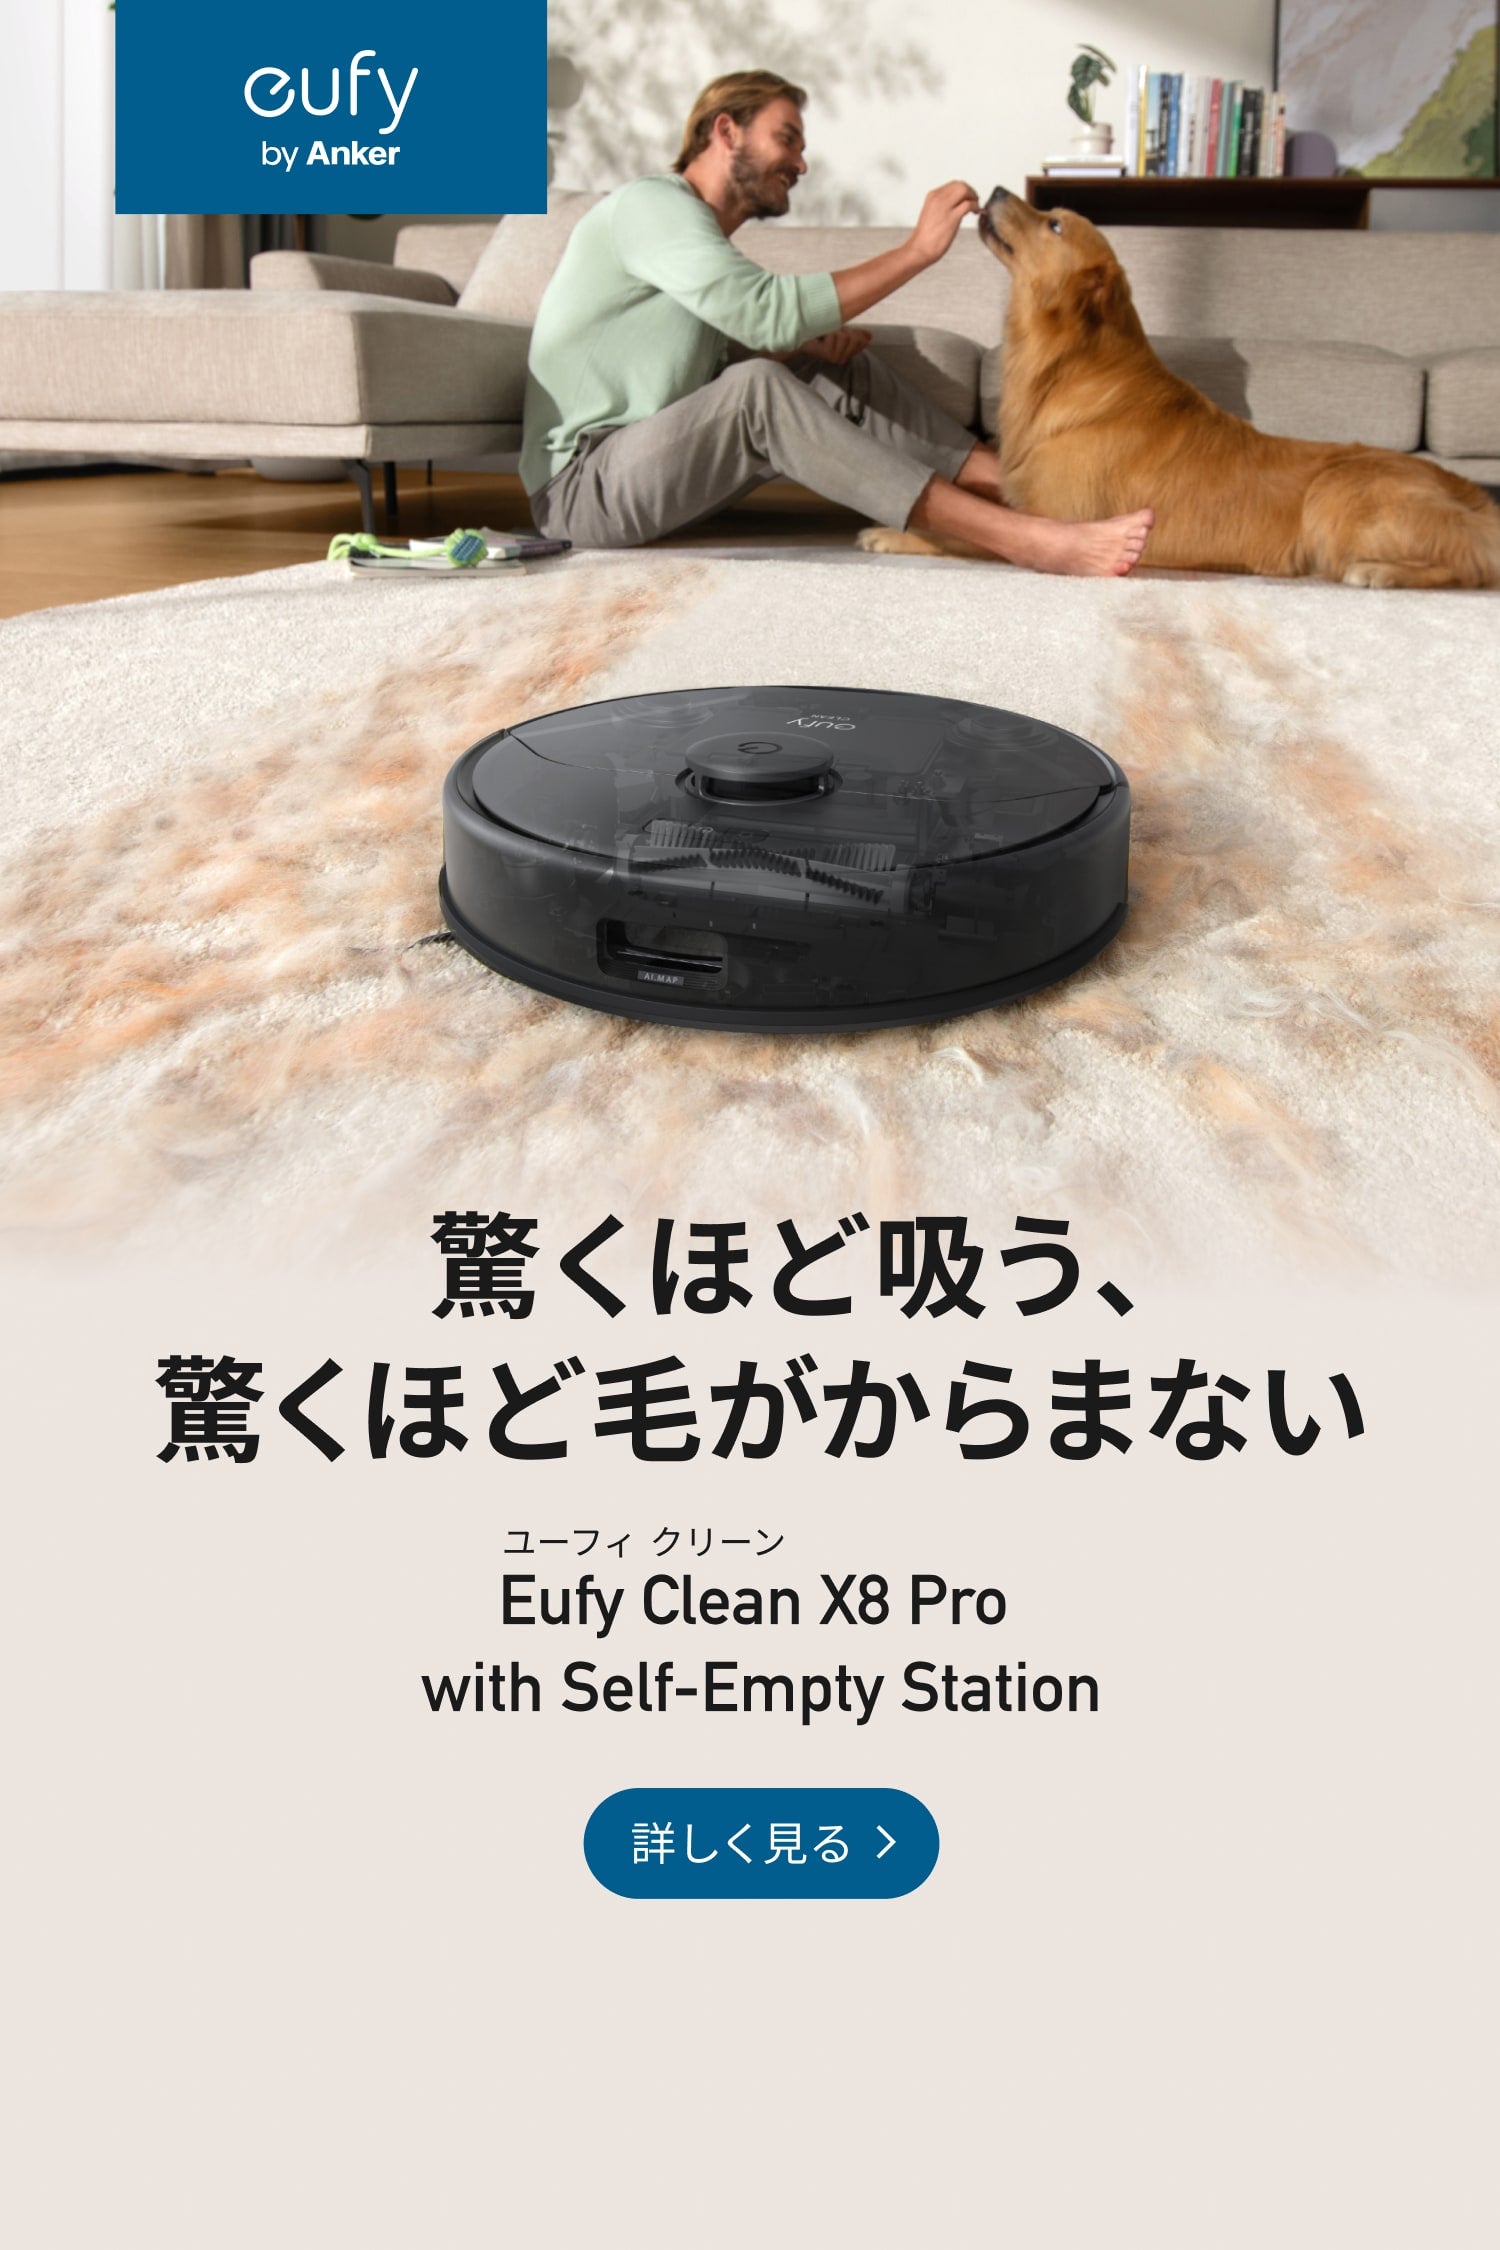 Eufy (ユーフィ) | Anker Japan公式サイト – Anker Japan 公式 ...